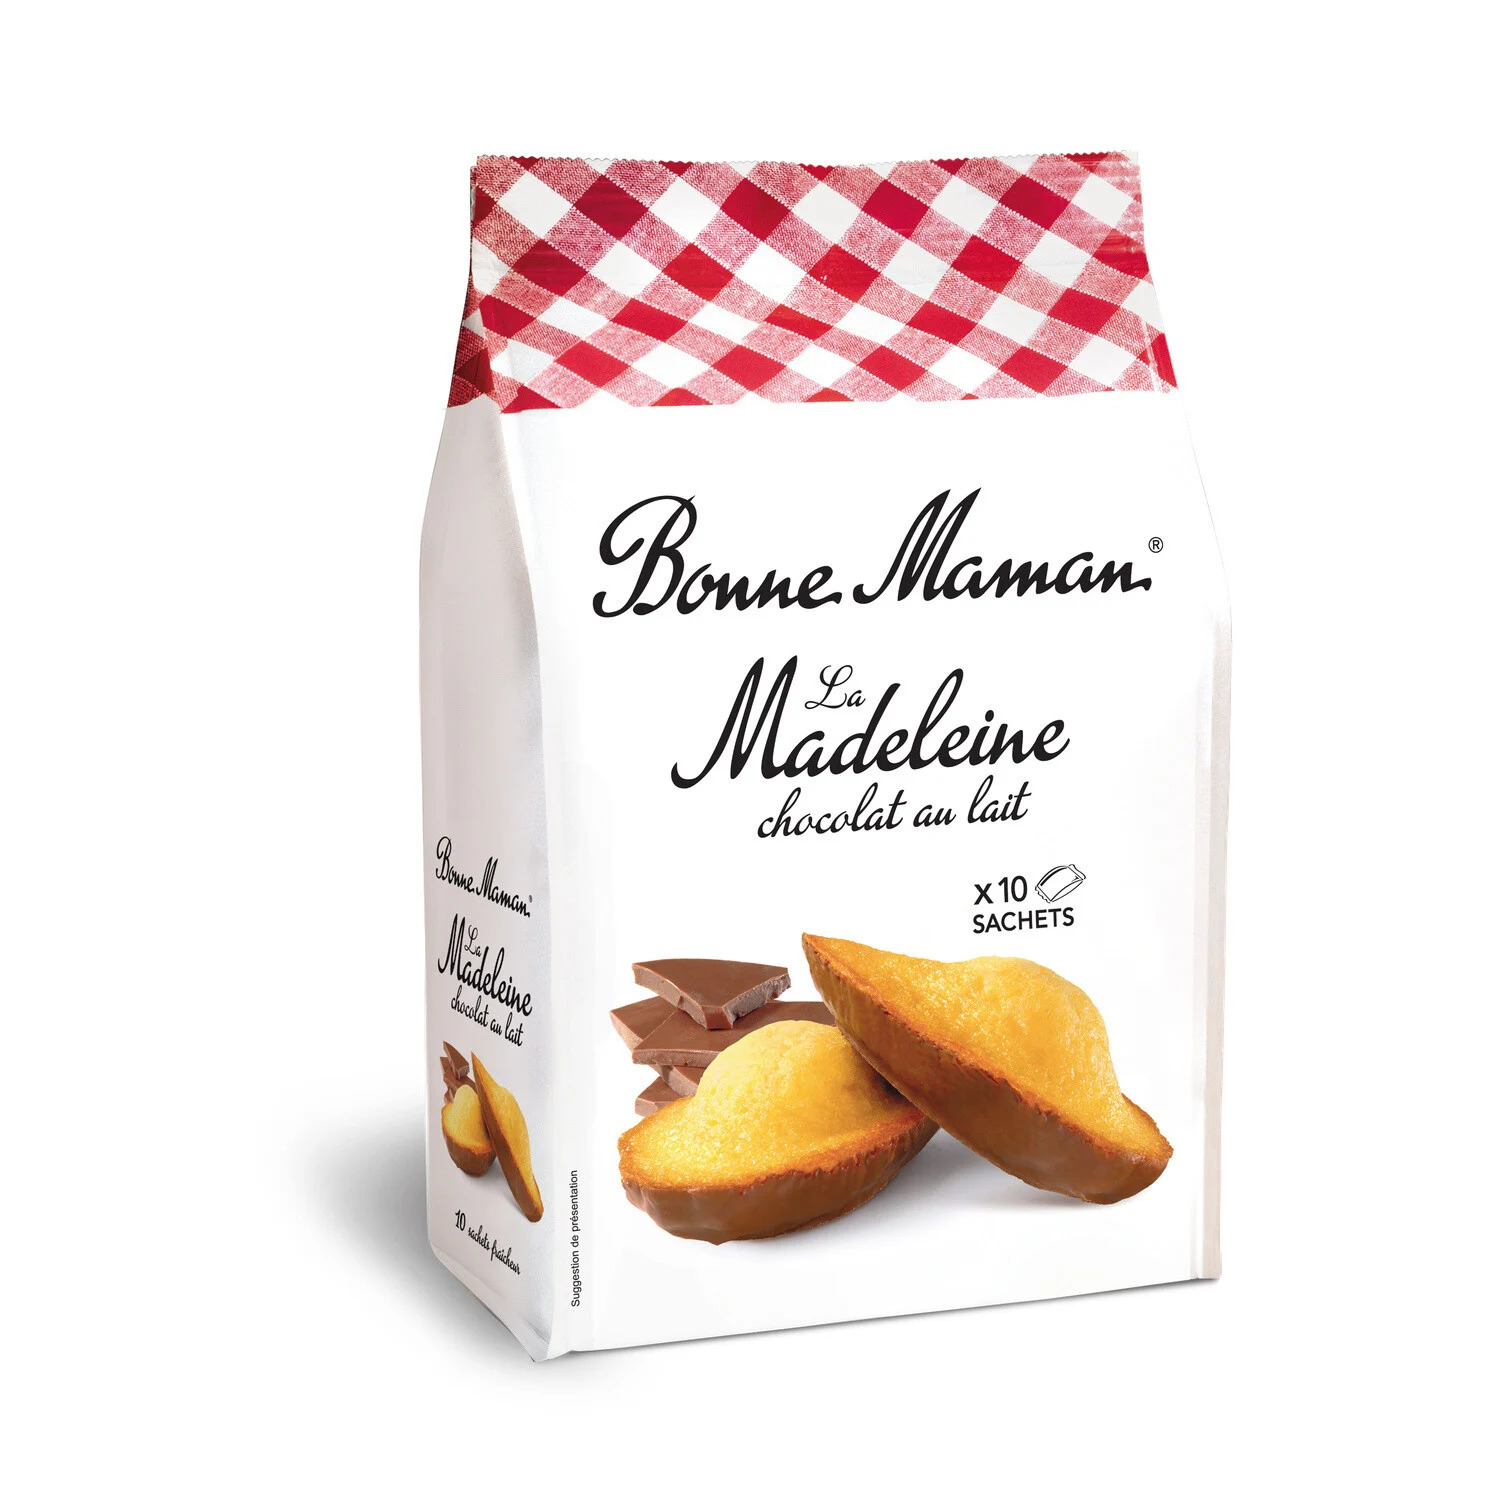 Milk Chocolate Madeleines Bonne Maman, Buy Online